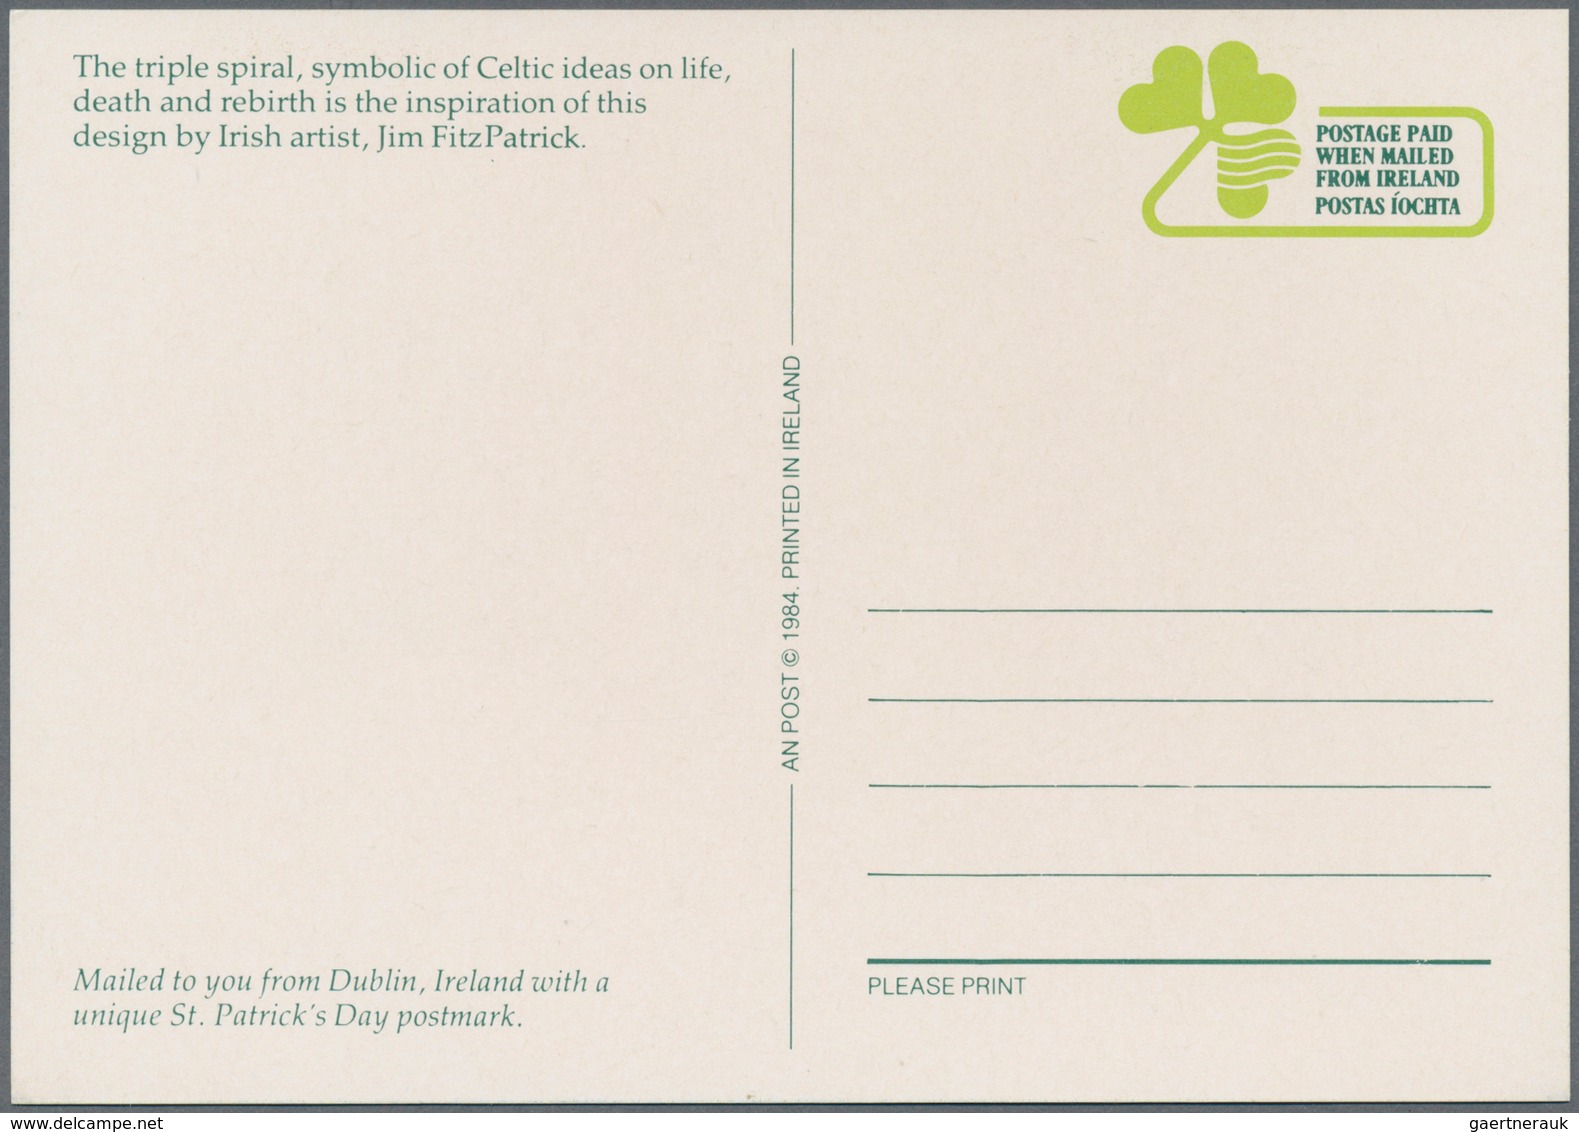 26851 Irland - Ganzsachen: 1924/2010, umfangreiche Spezial-Sammlung "Ganzsachen-Postkarten" mit einigen hu